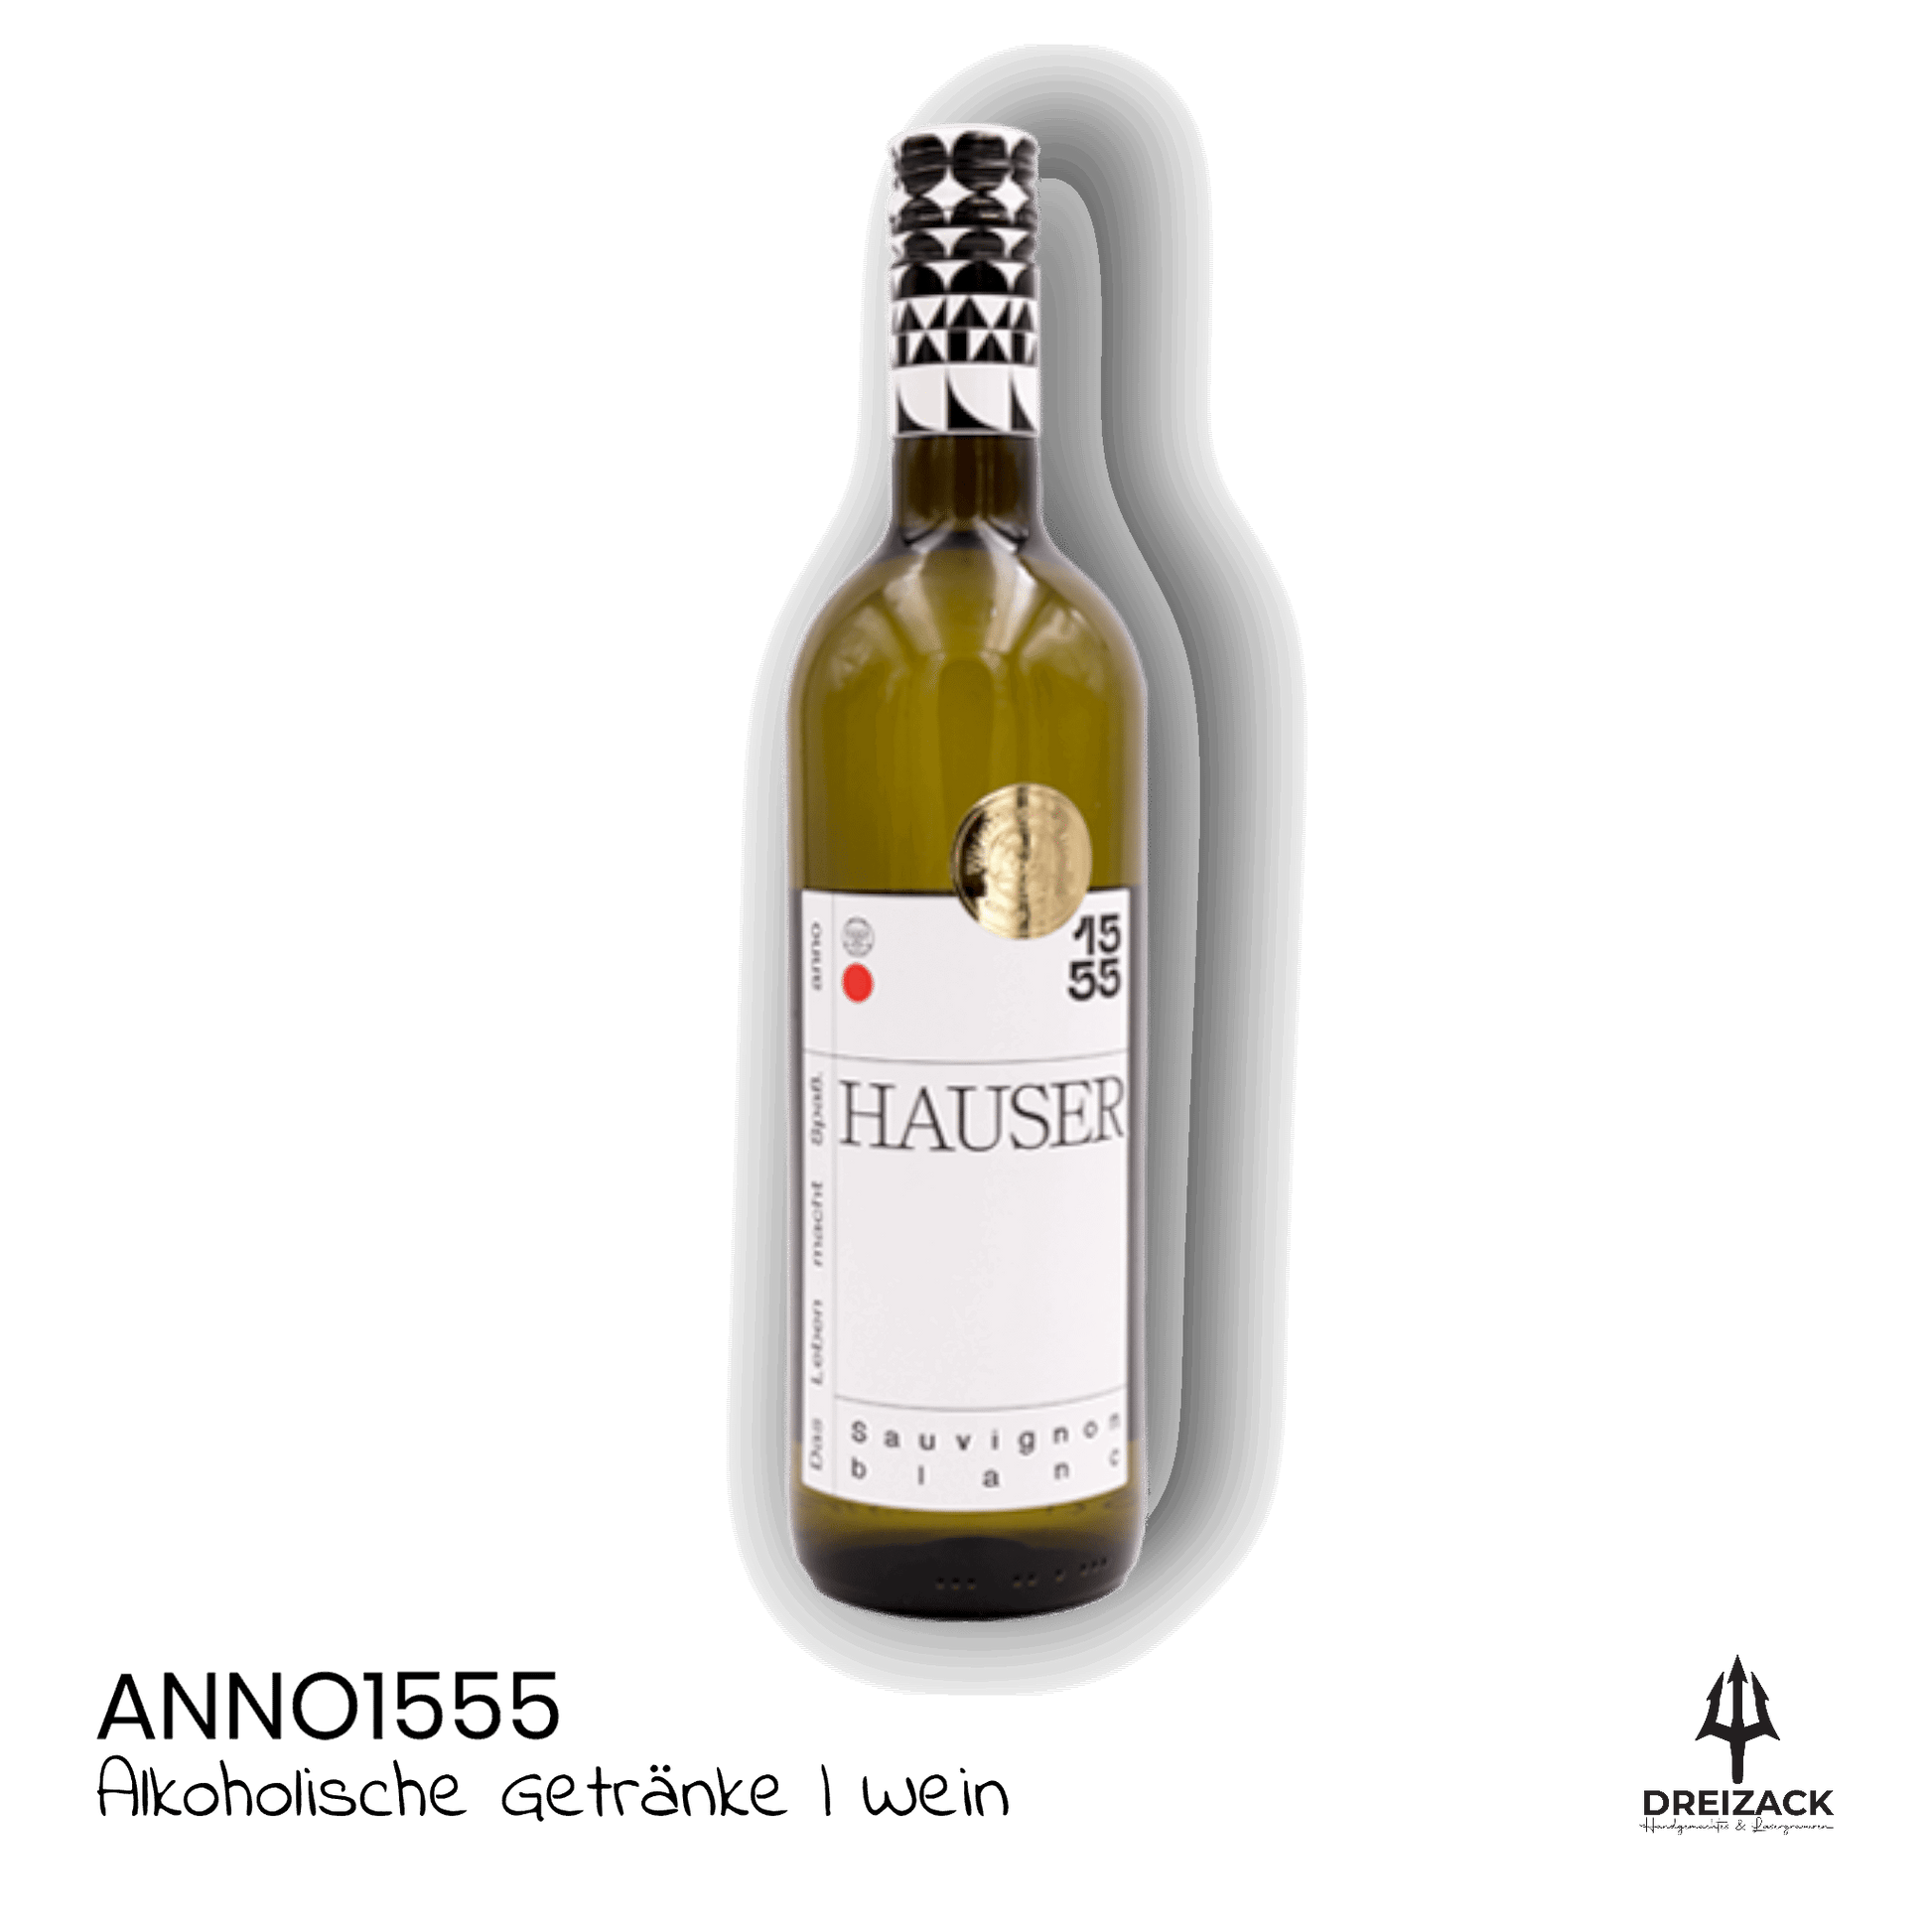 Sauvignon Blanc - Weingut Hauser verzaubert die Sinne Alkoholische Getränke Anno1555 oesterreich handgemachte geschenke in wien